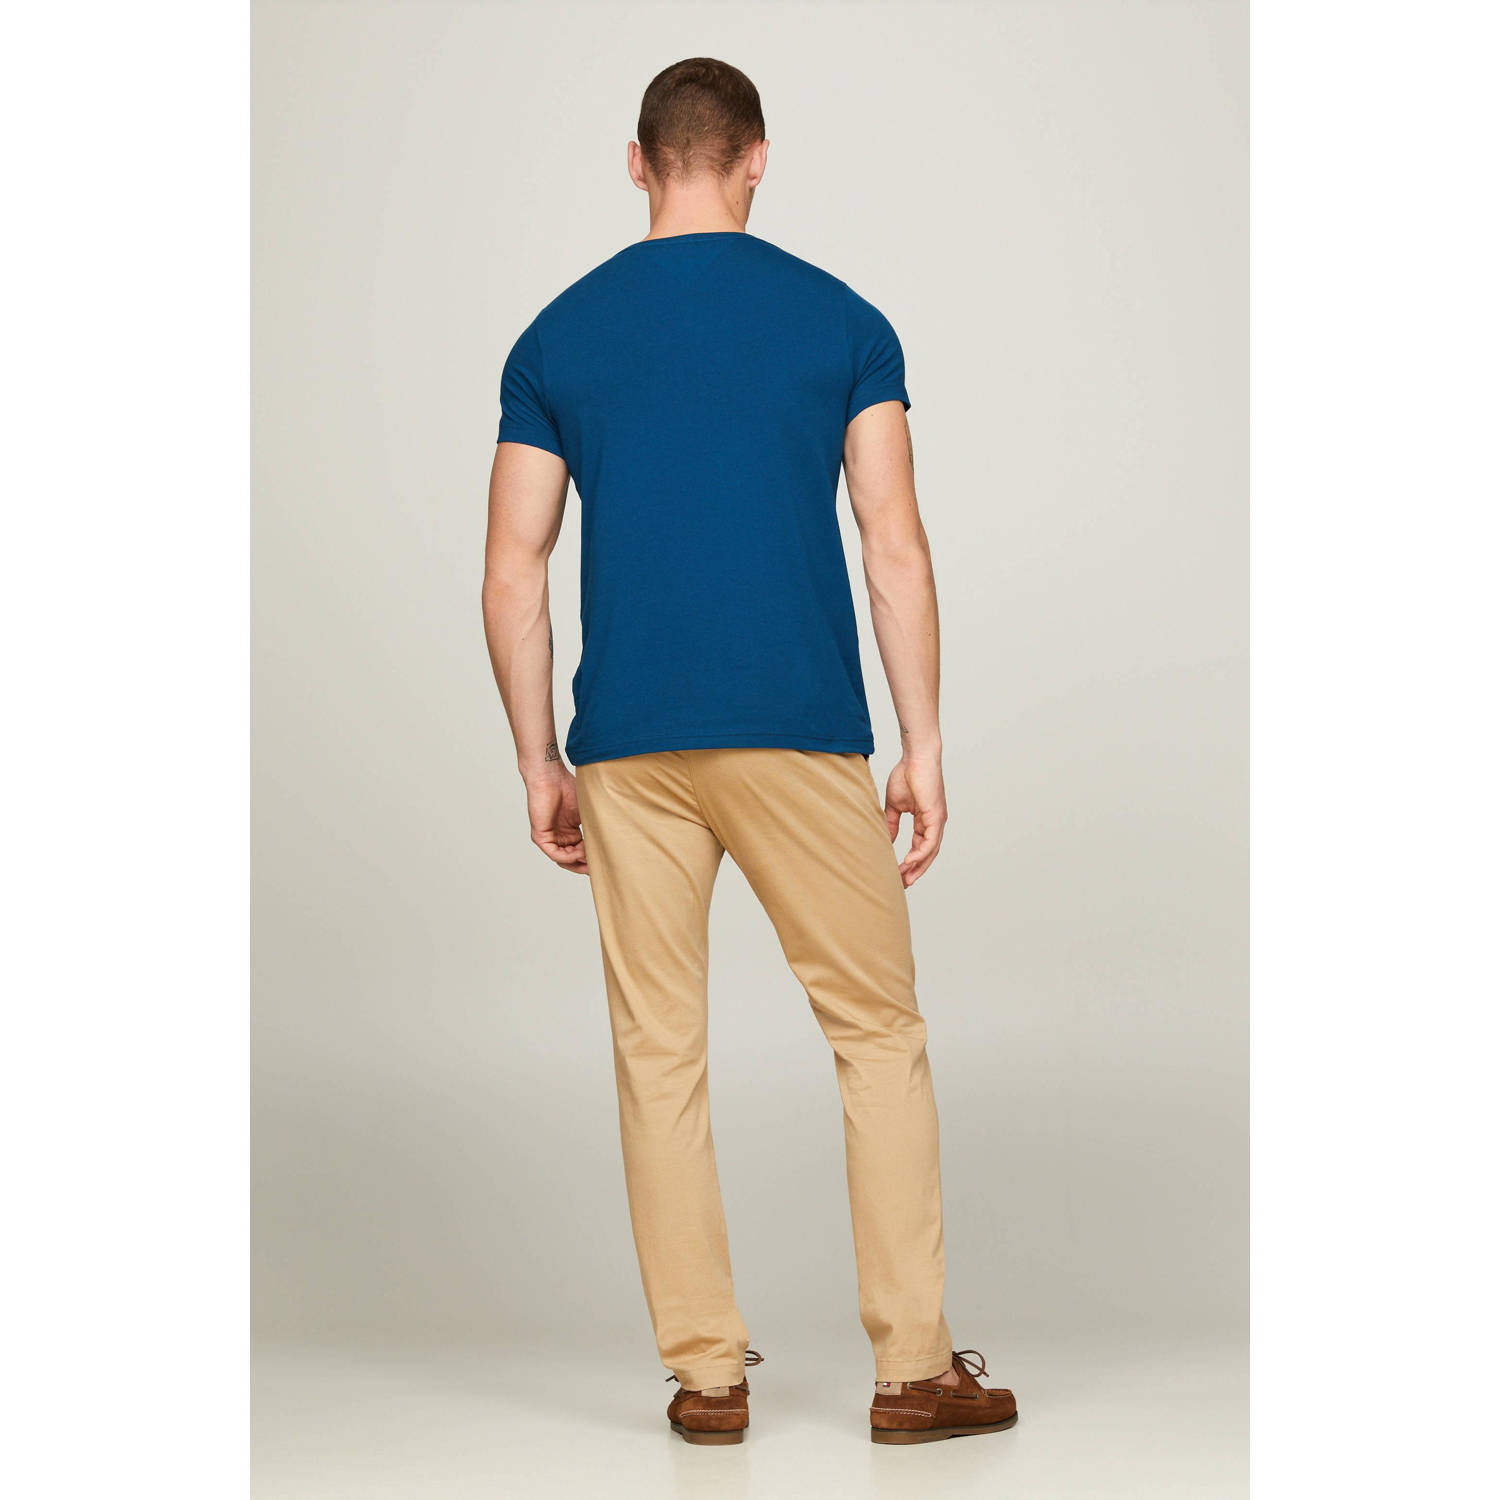 Tommy Hilfiger slim fit T-shirt met logo anchor blue